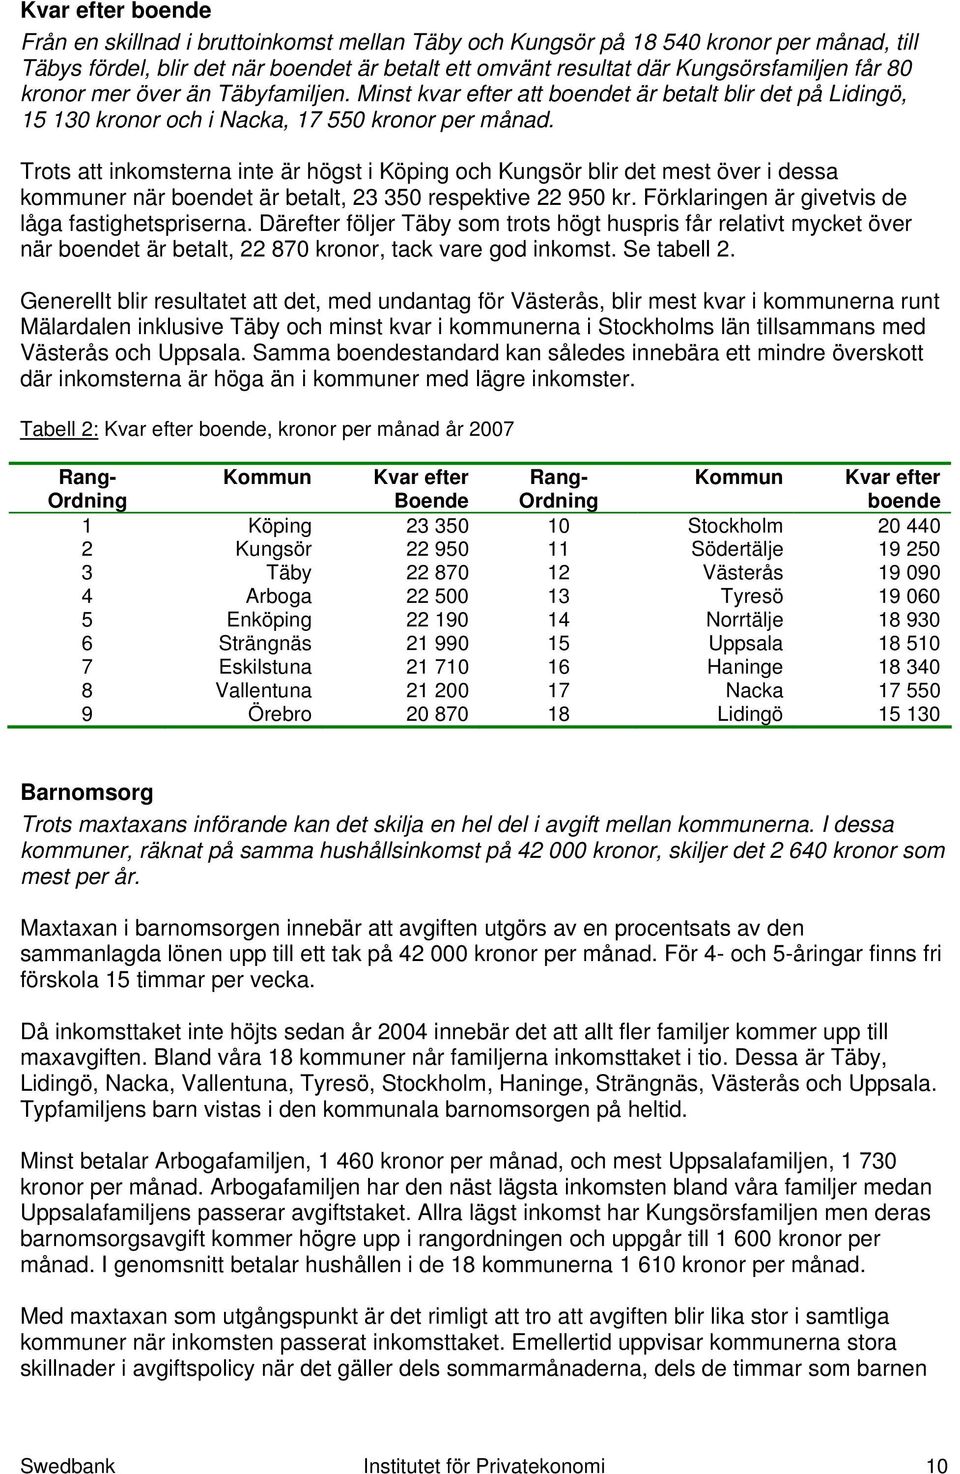 Trots att inkomsterna inte är högst i Köping och Kungsör blir det mest över i dessa kommuner när boendet är betalt, 23 350 respektive 22 950 kr. Förklaringen är givetvis de låga fastighetspriserna.